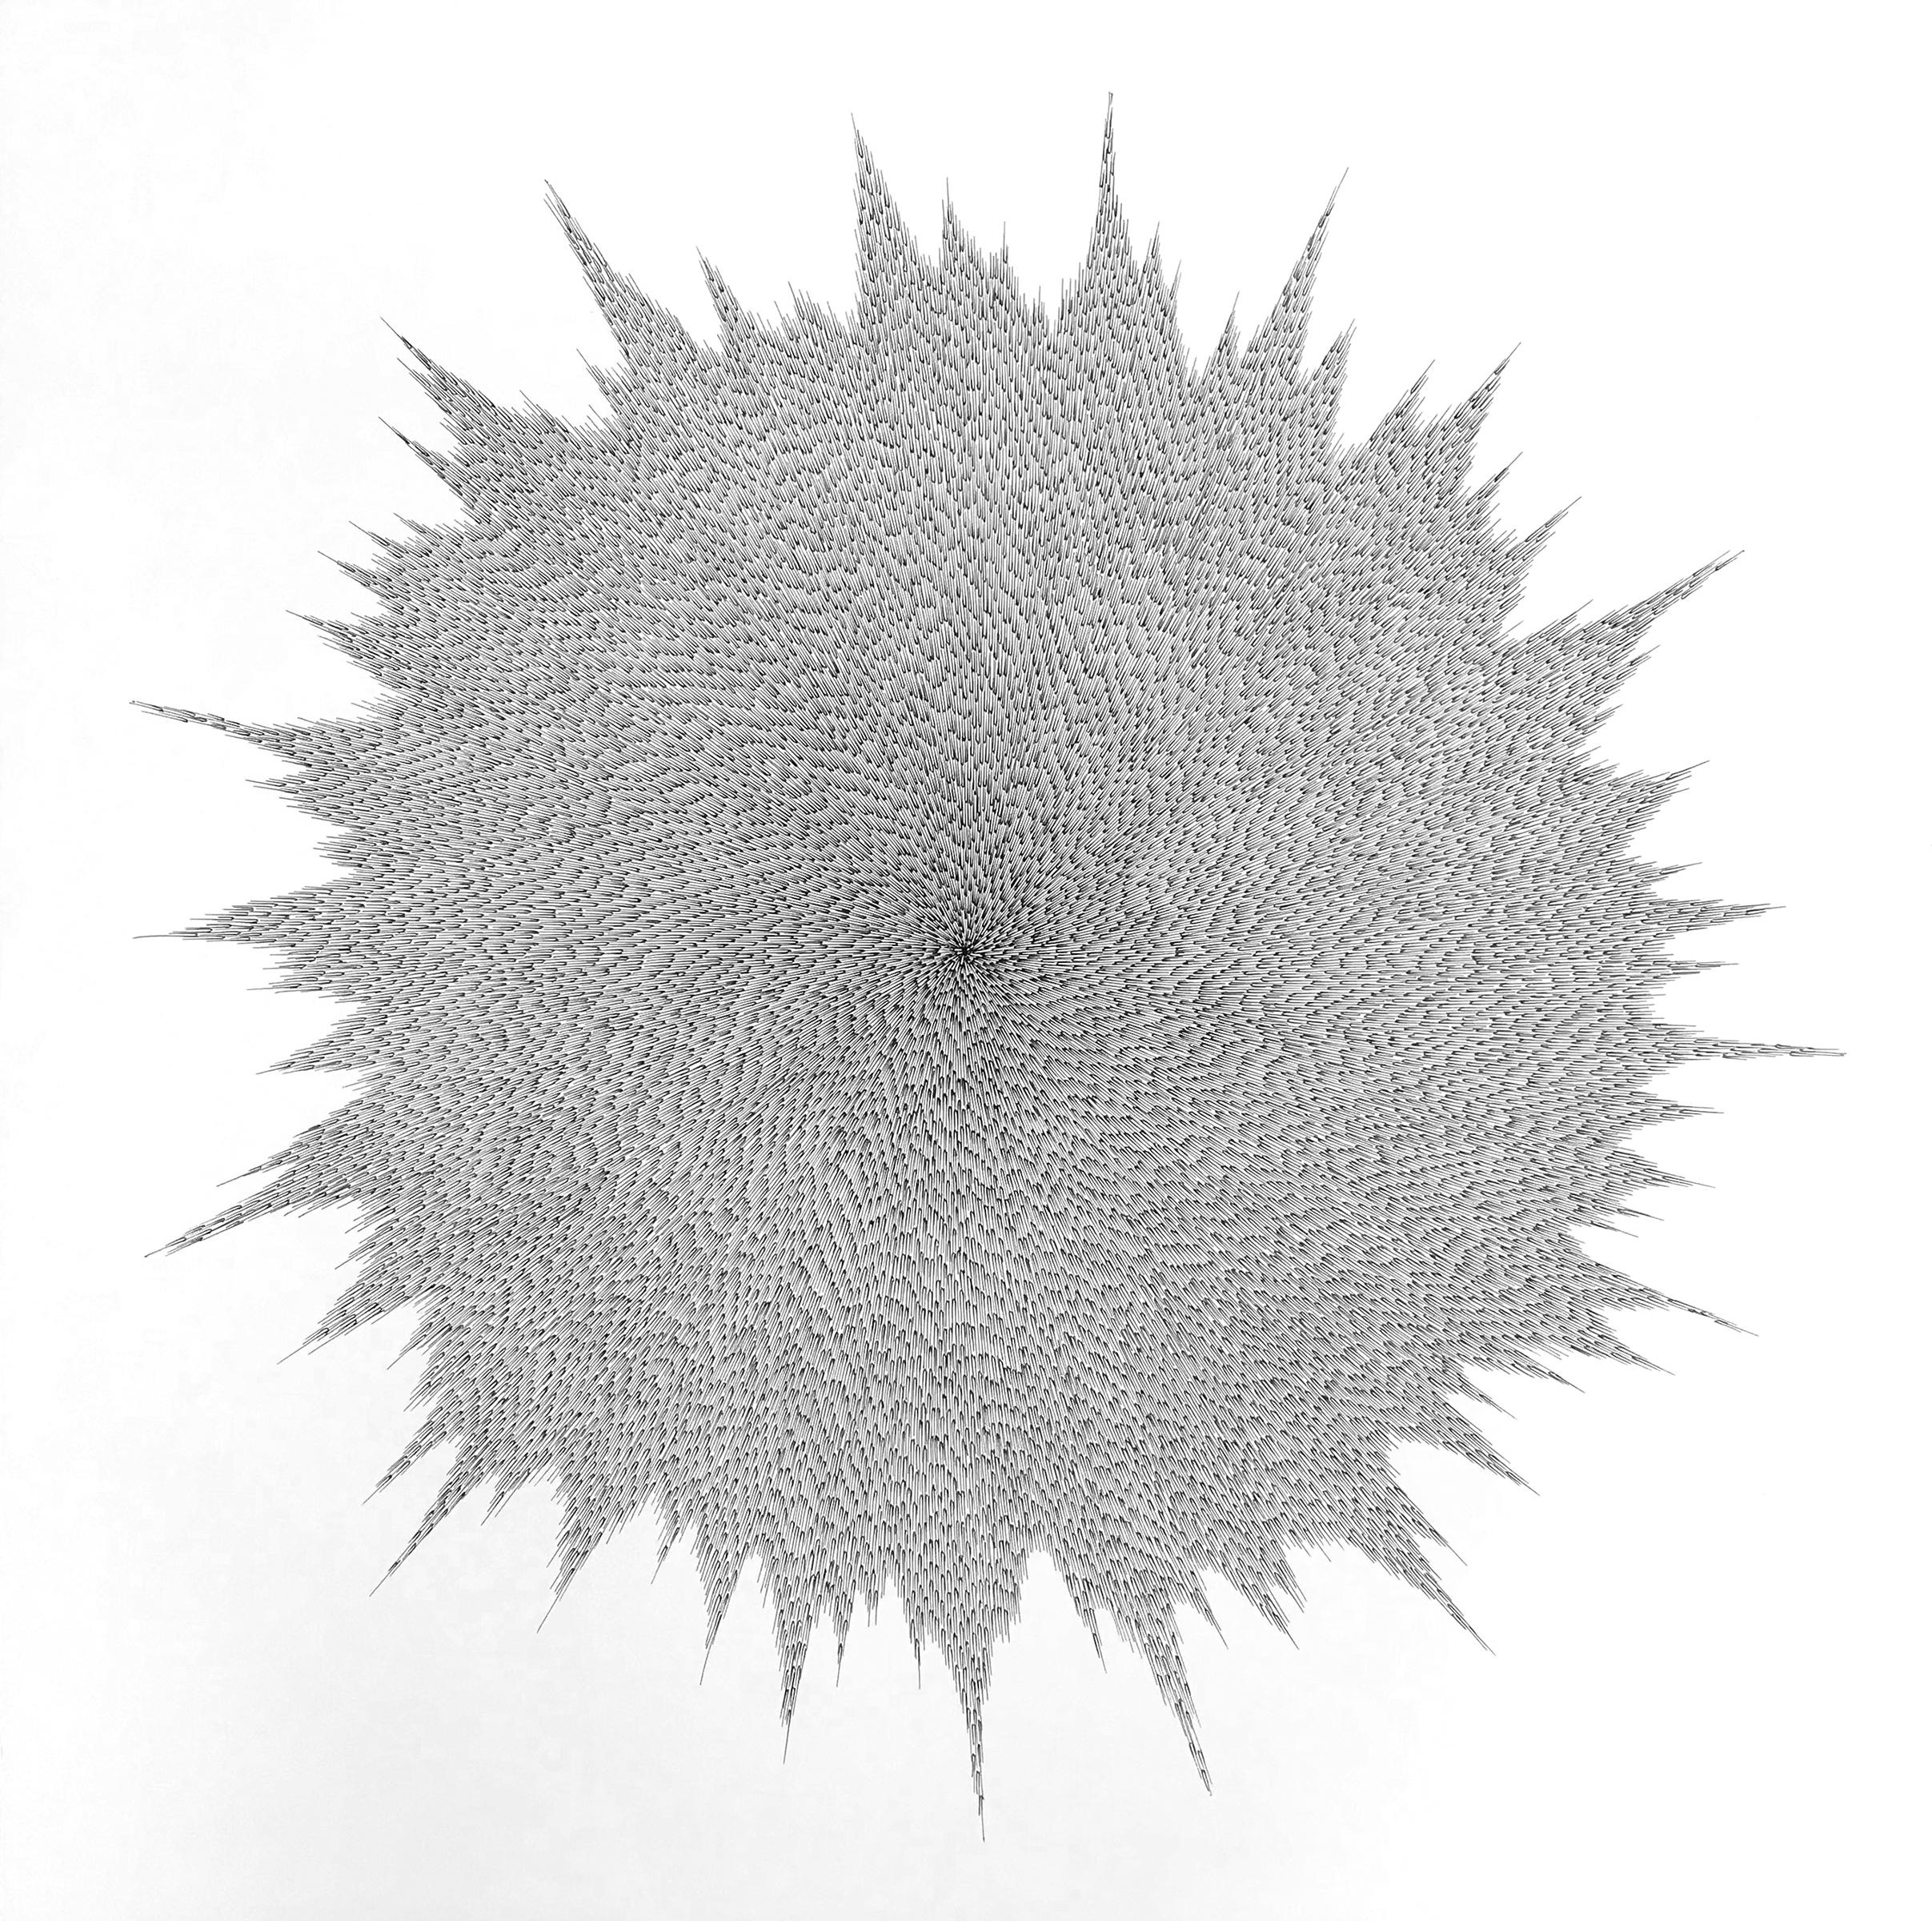 Abstract Drawing Jenifer Kent - Éclaboussures, dessin à l'encre géométrique abstrait